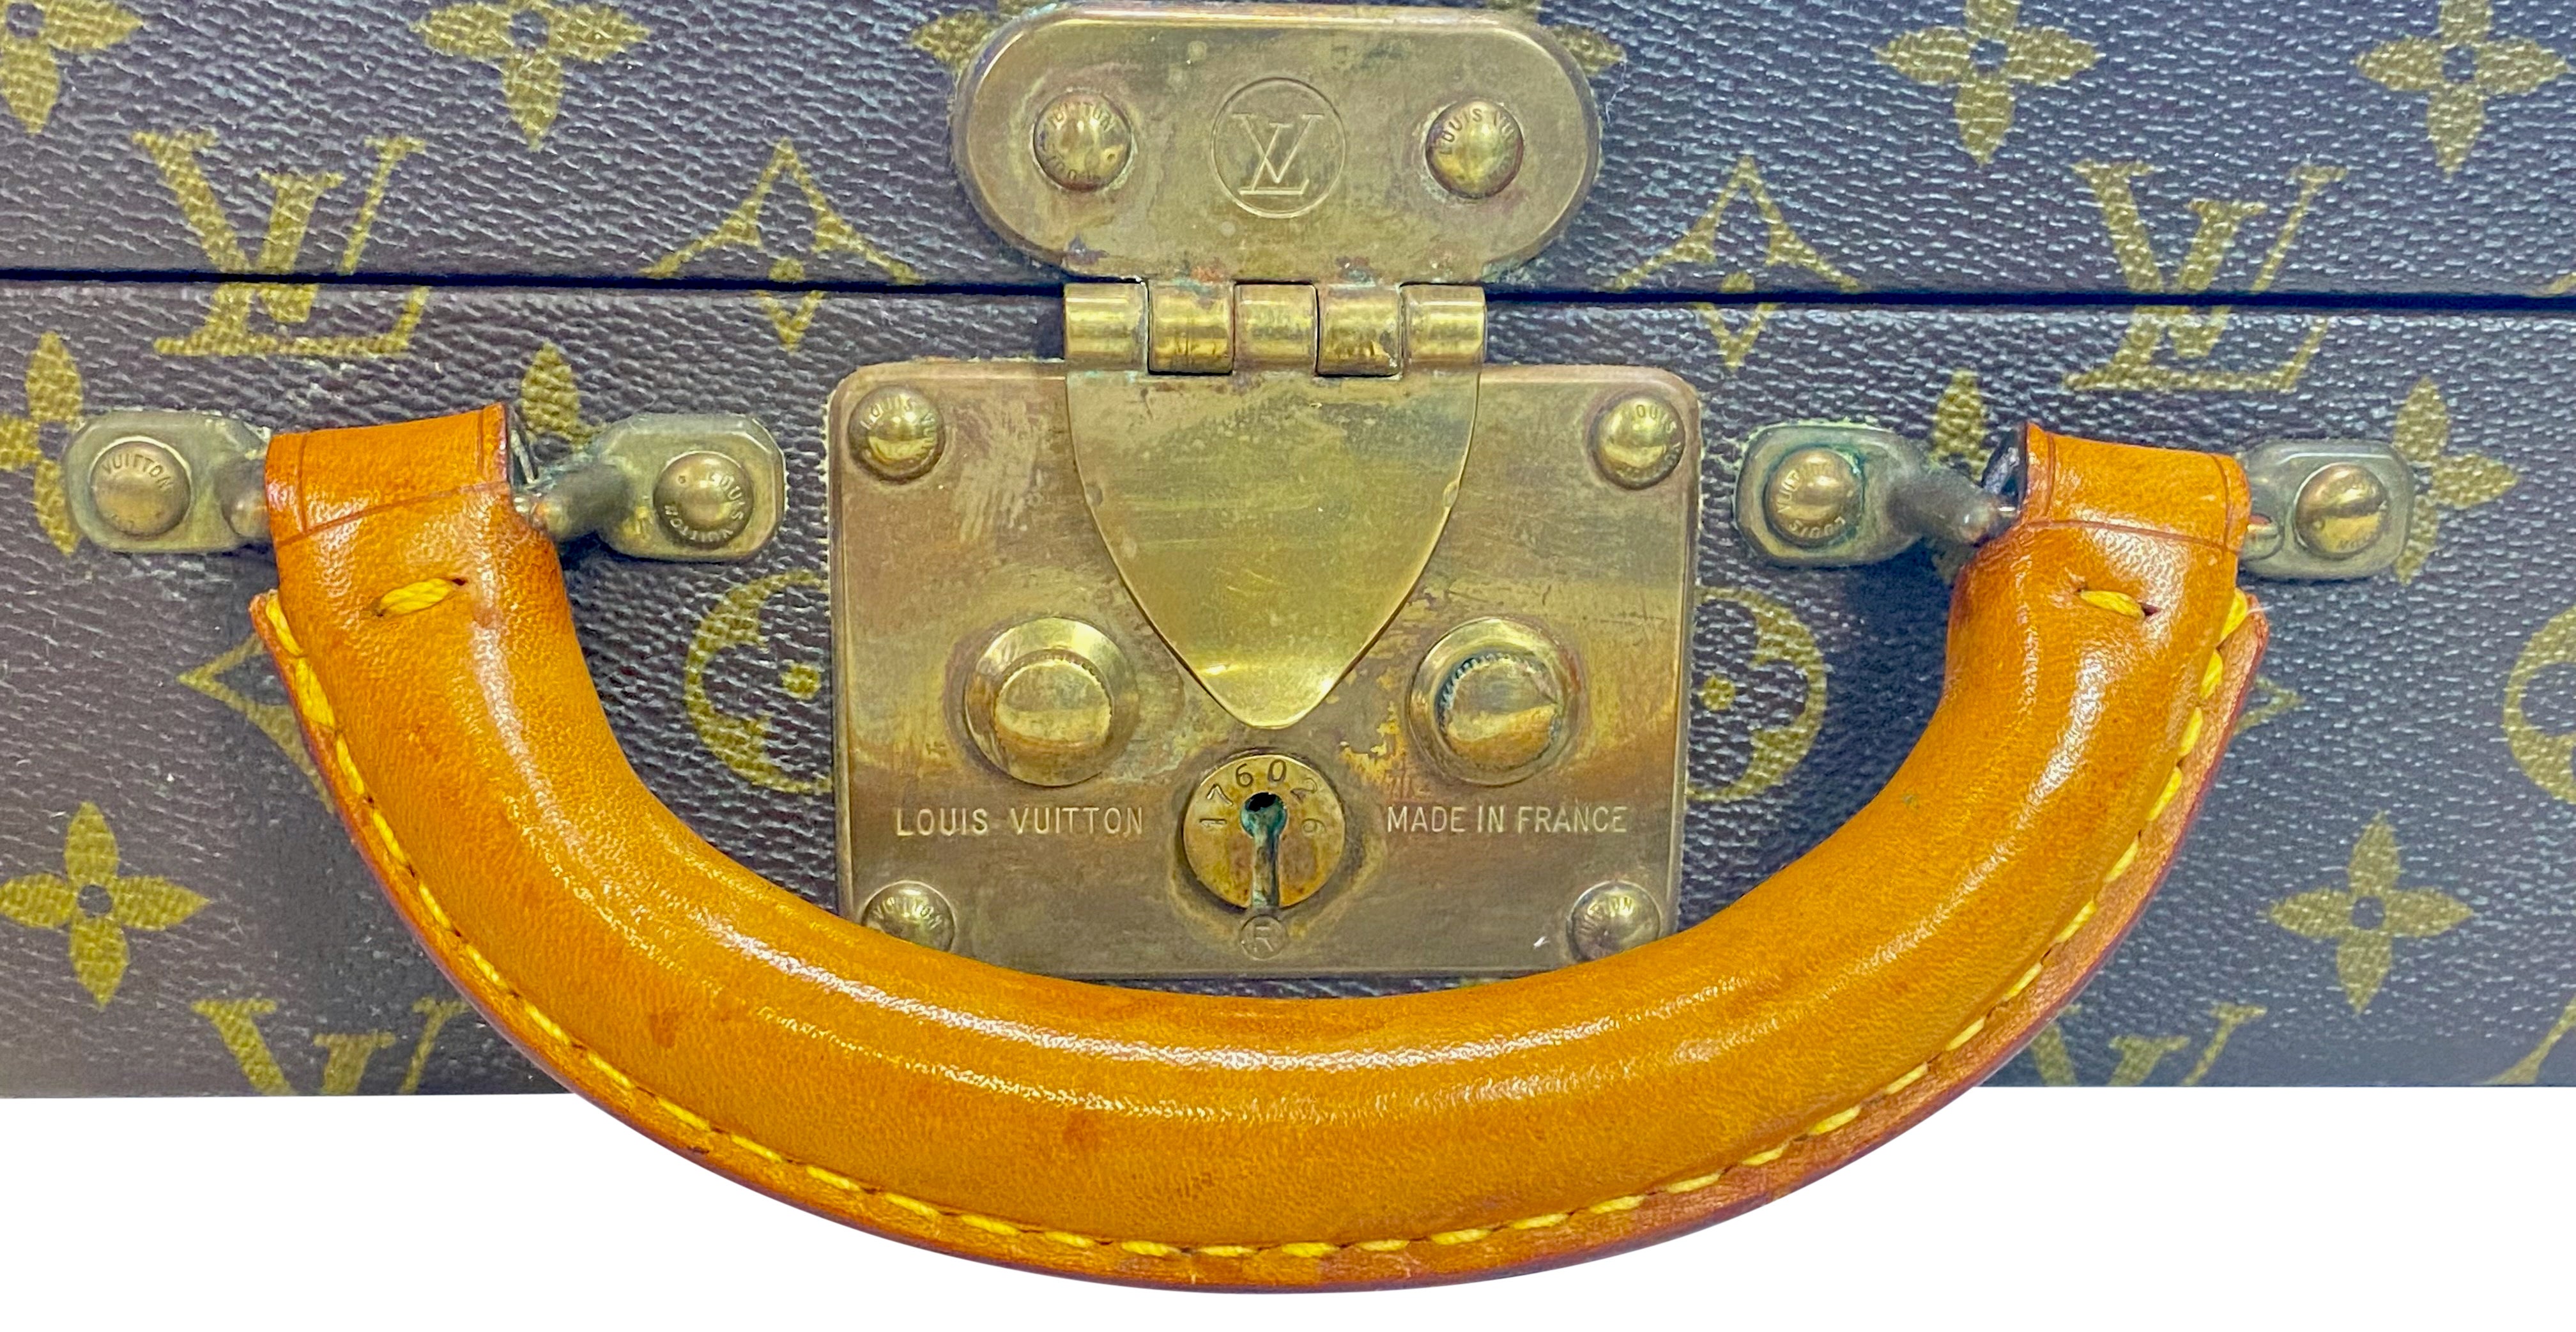 Valise ou valise rigide d'origine Louis Vuitton en monogramme avec folio d'origine à fermeture éclair.
Excellent état vintage, très peu utilisé, origine privée.
Fabriqué en France, années 1970.

